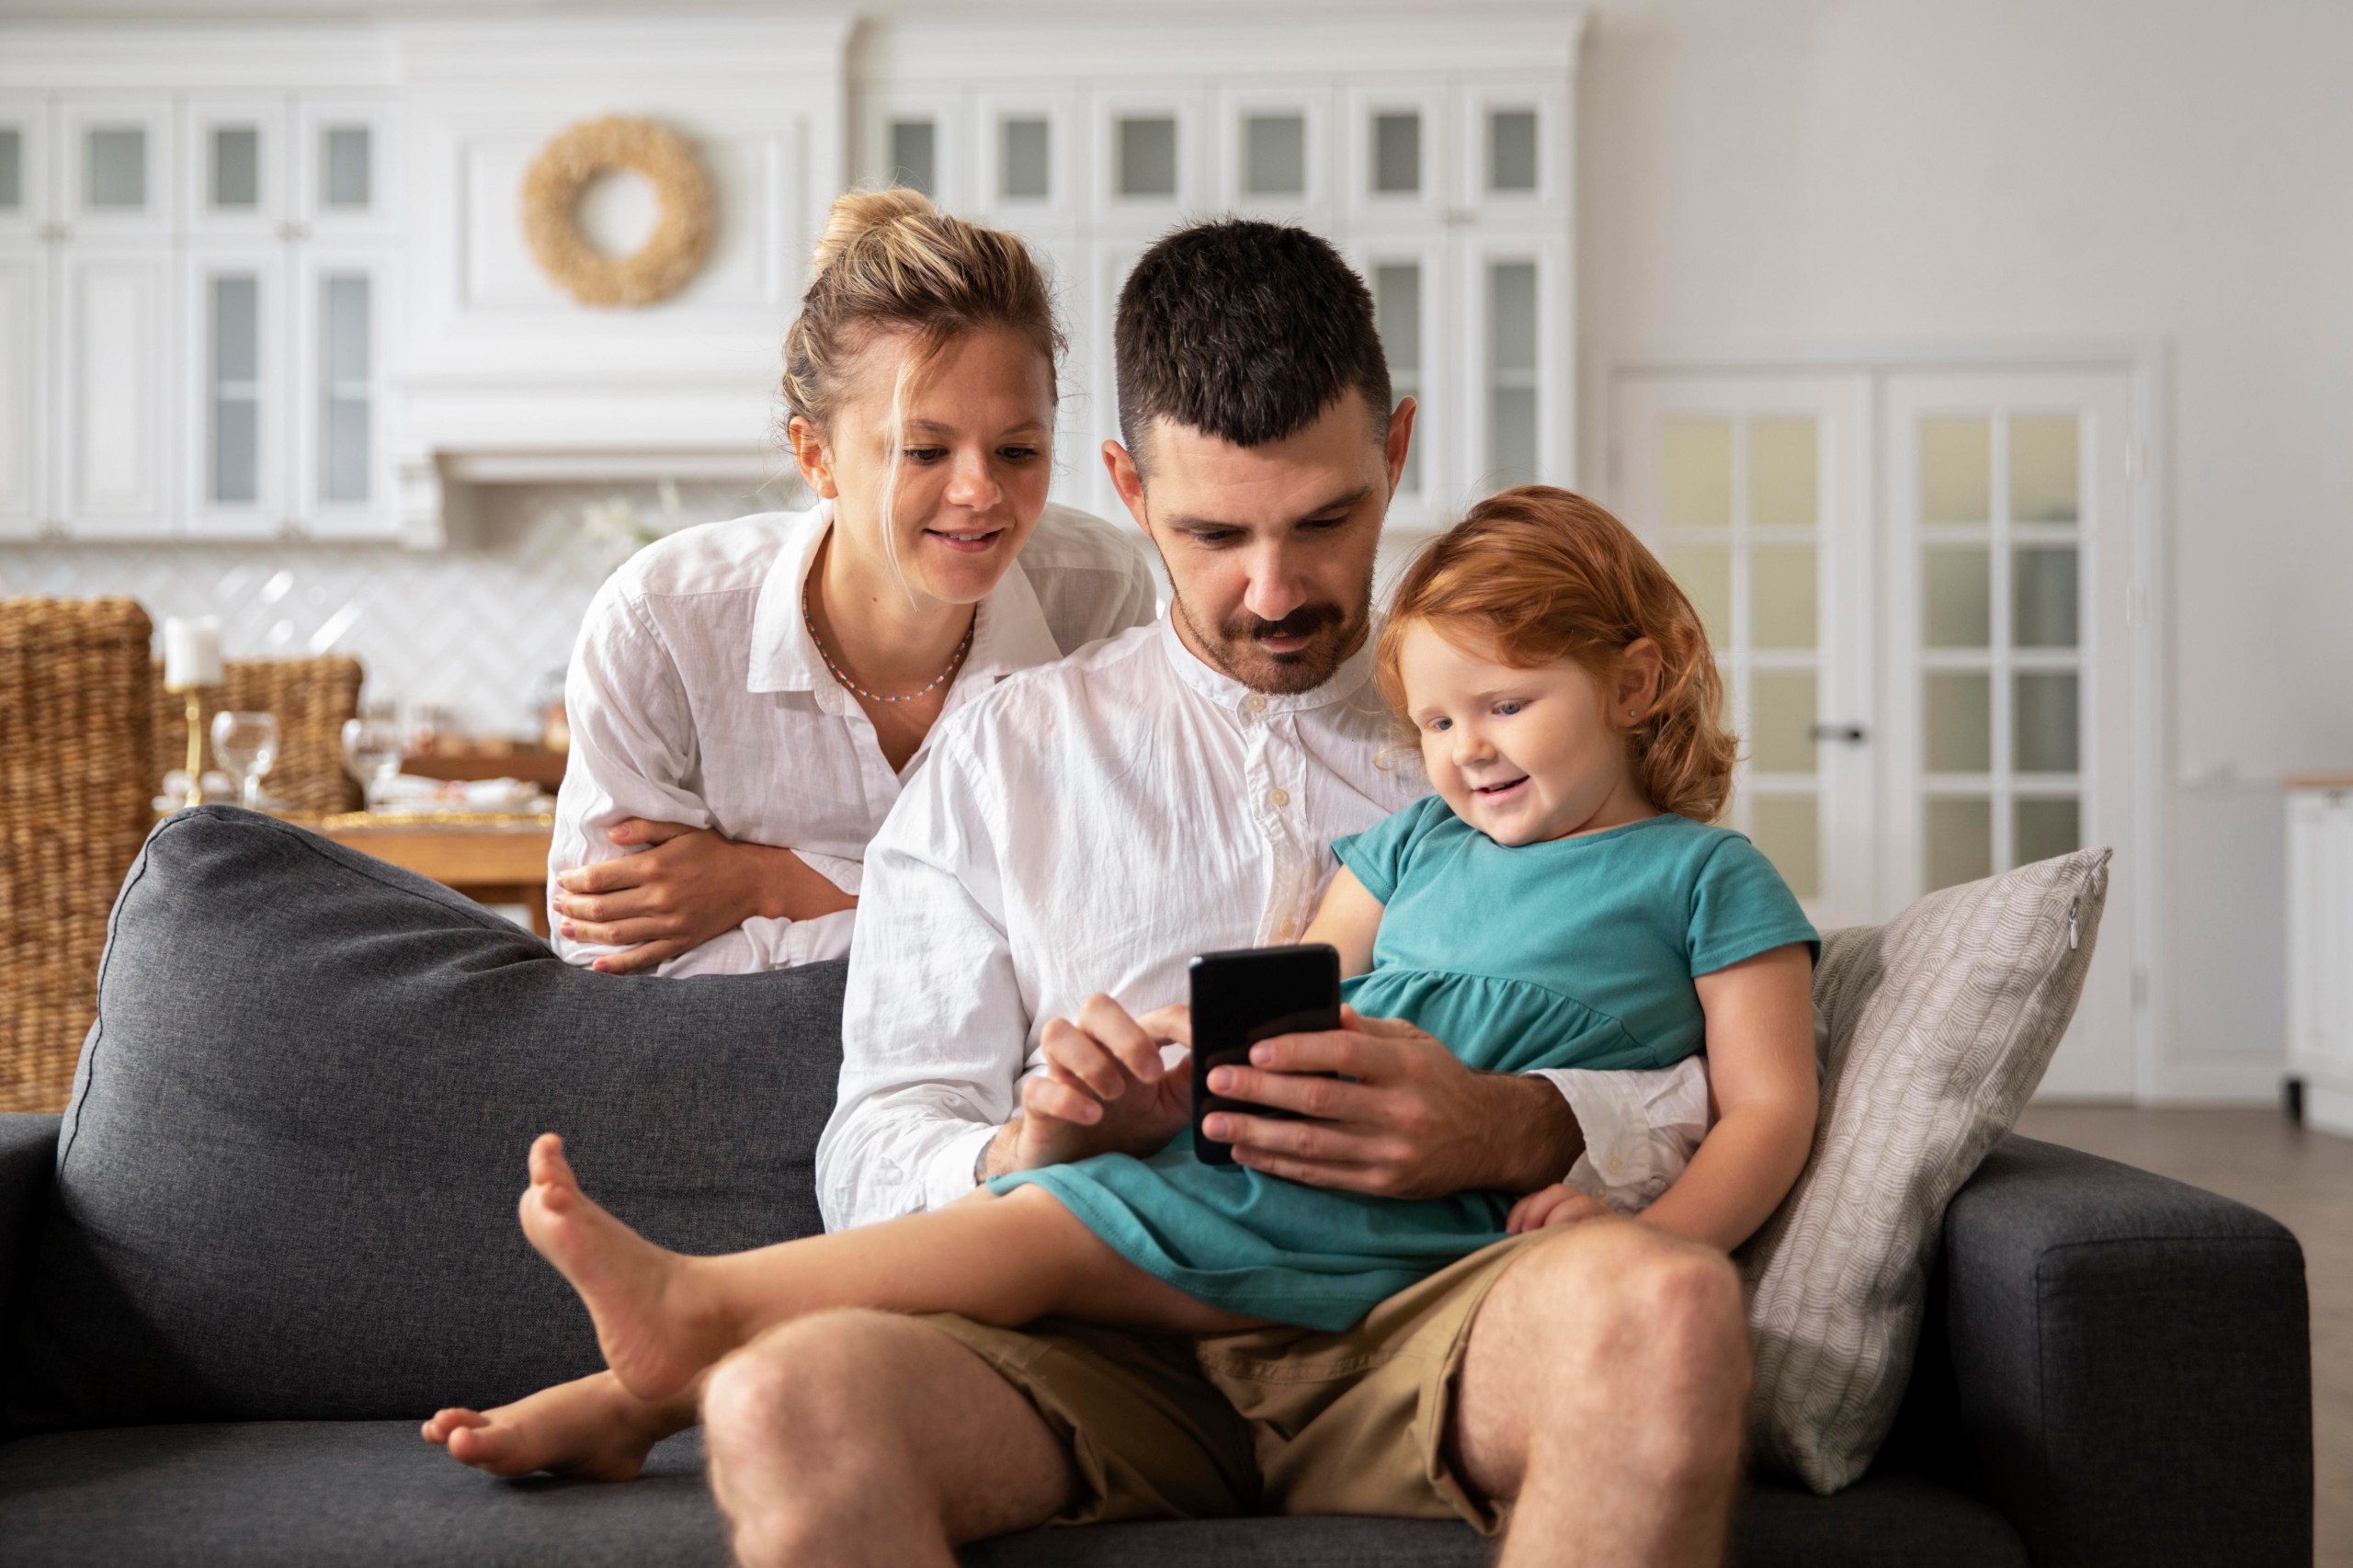  Как защитить себя и свою семью от телефонного мошенничества?  